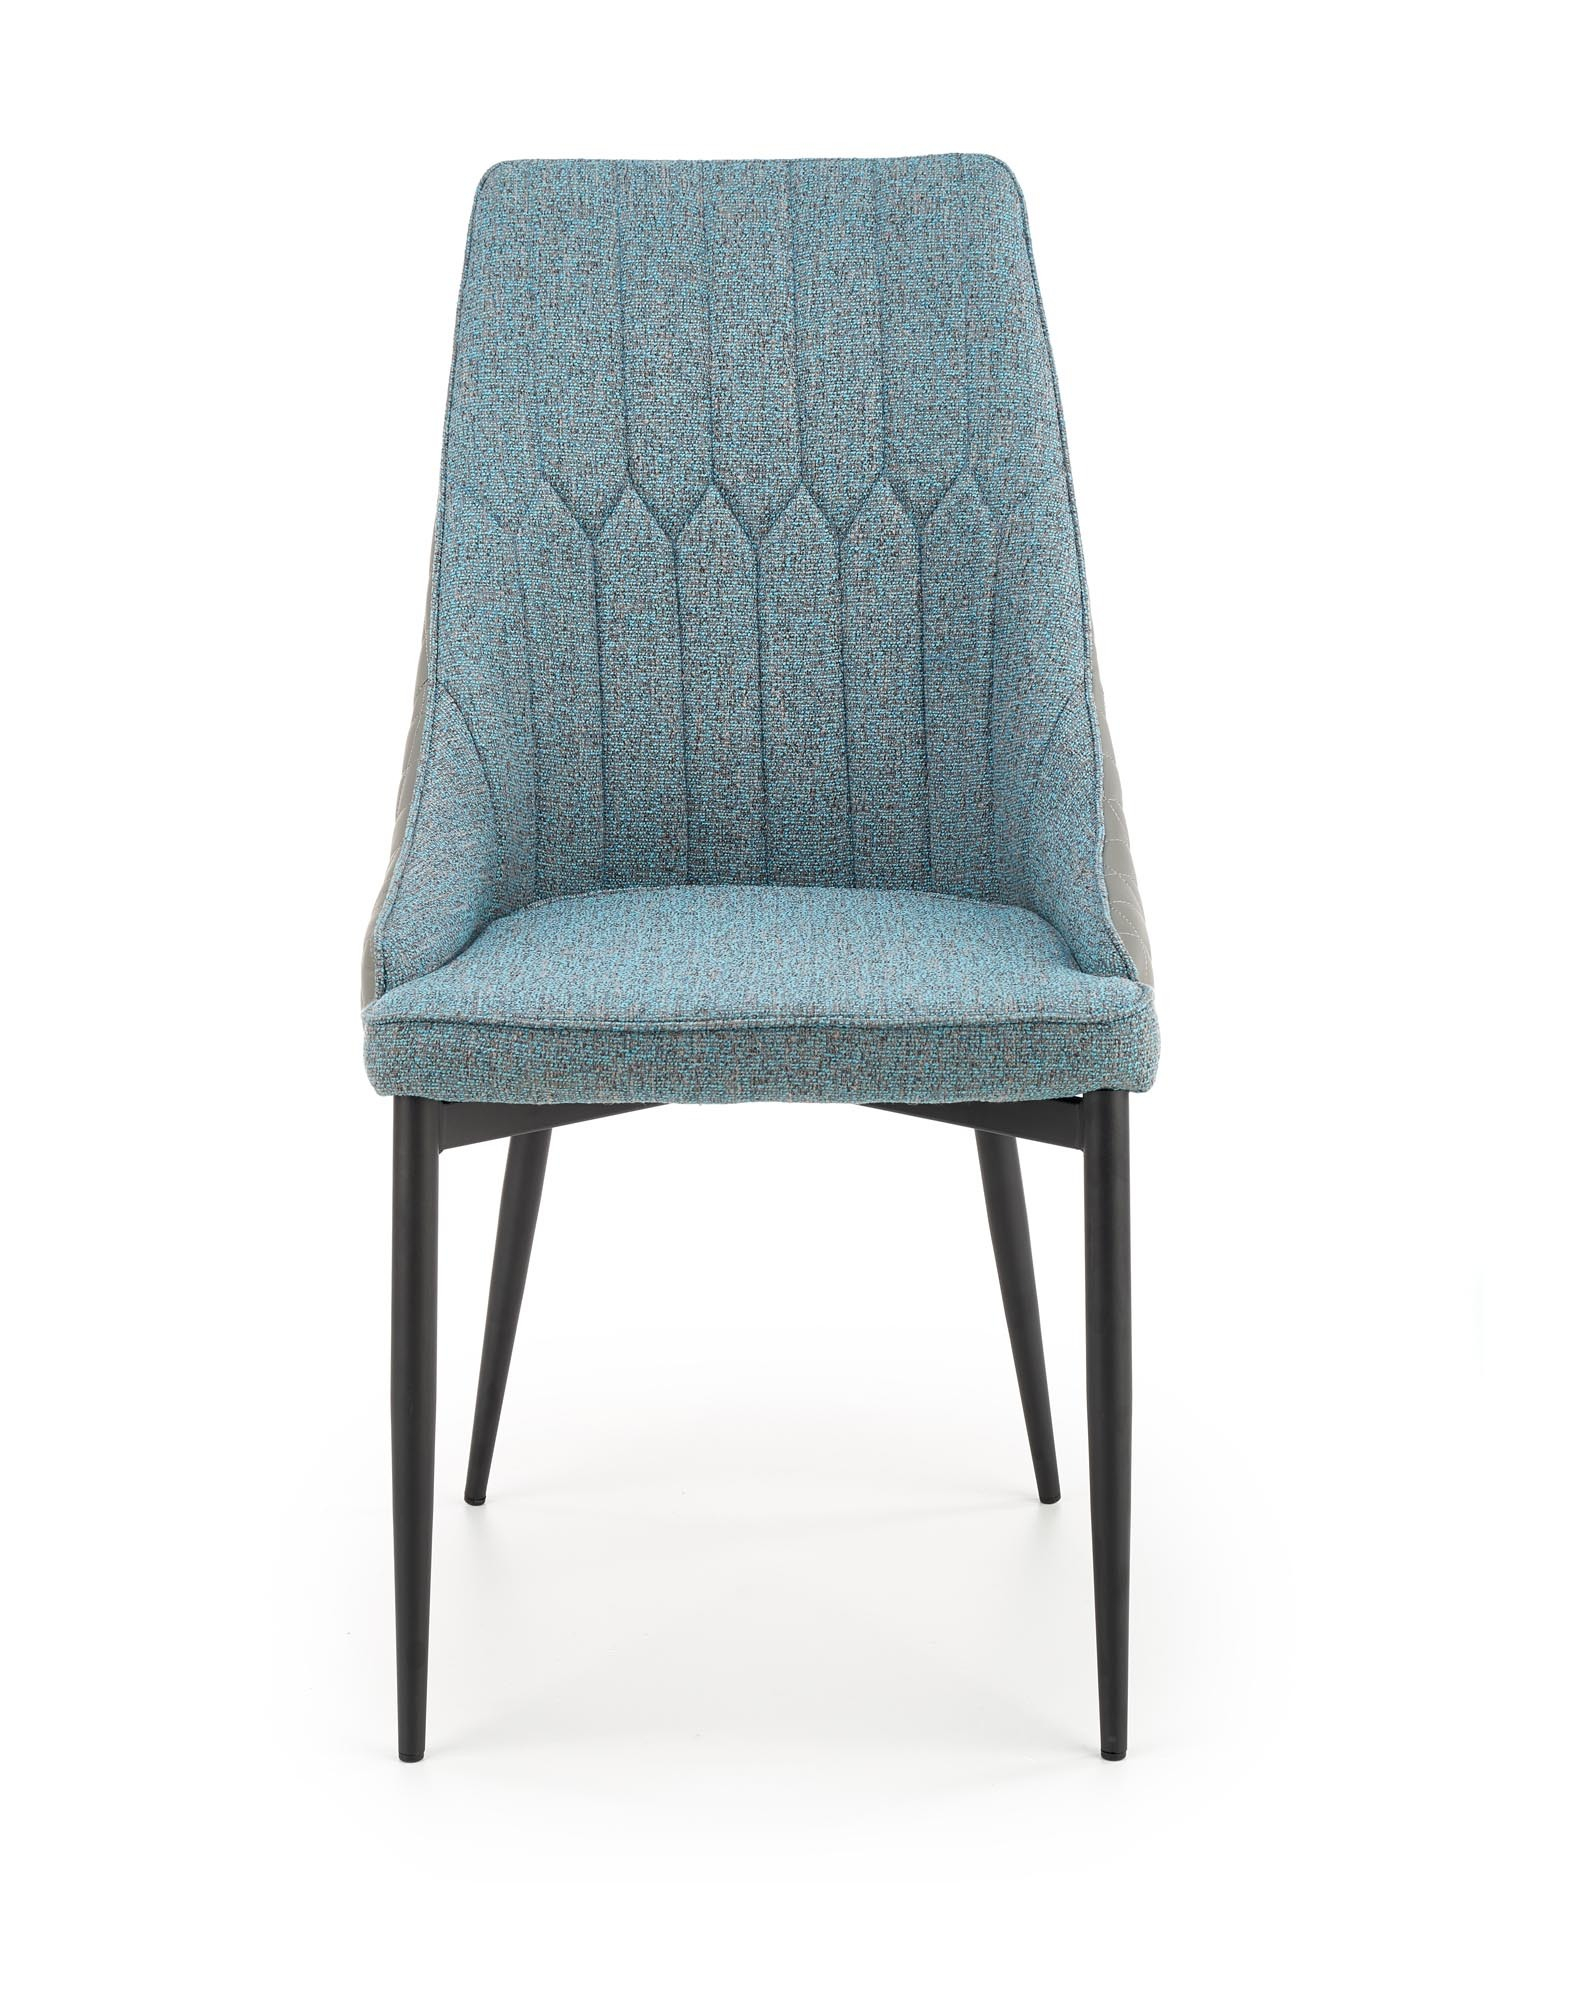 K448 krzesło, kolor: jasny popielaty - niebieski